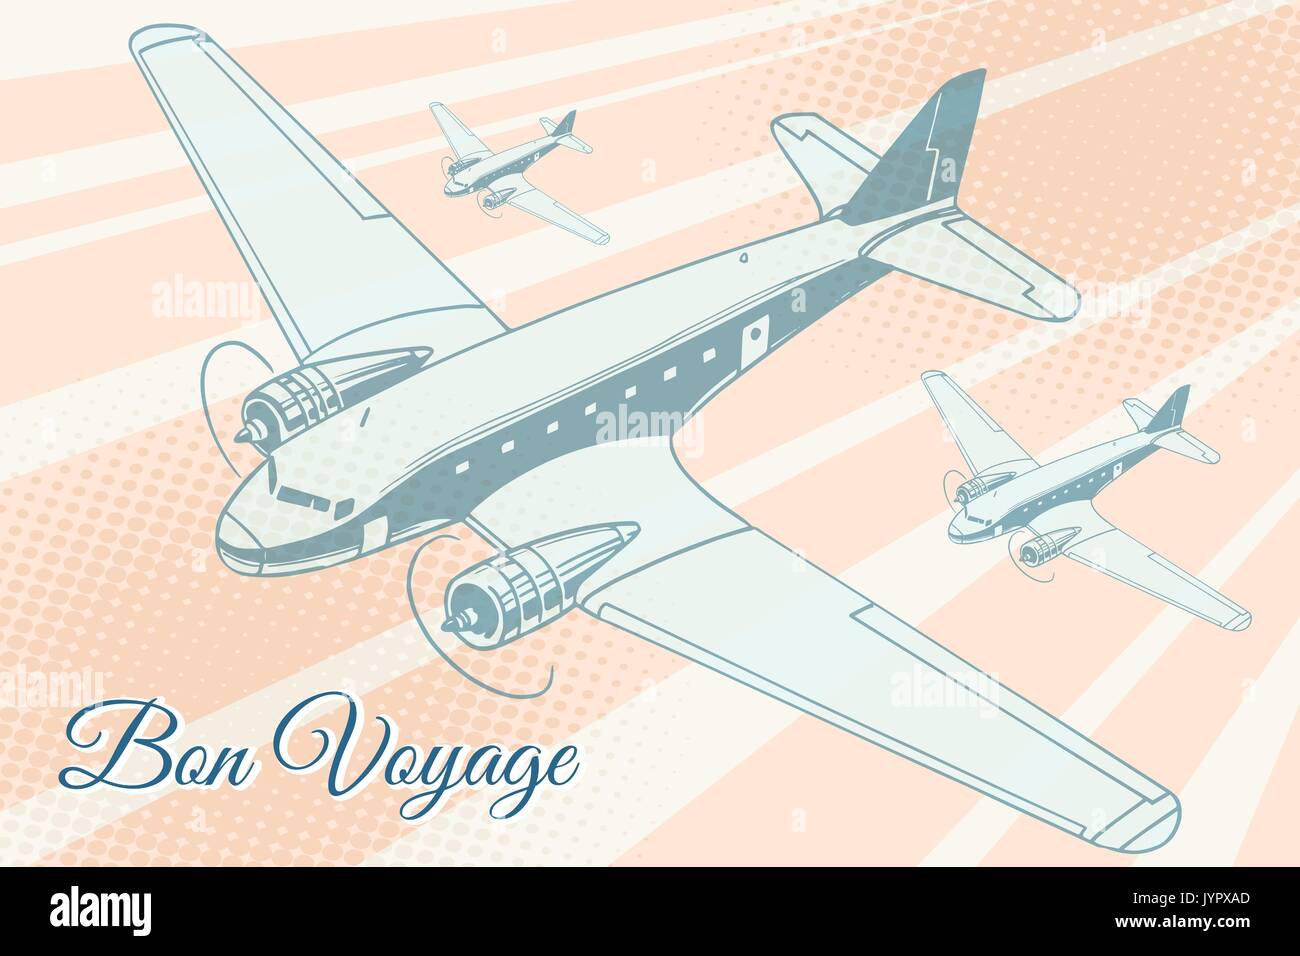 Bon Voyage aviation Hintergrund. Flugzeug Luftfahrt reisen reise Tourismus Luftverkehr. Pop Art retro Vektor illustration Stock Vektor